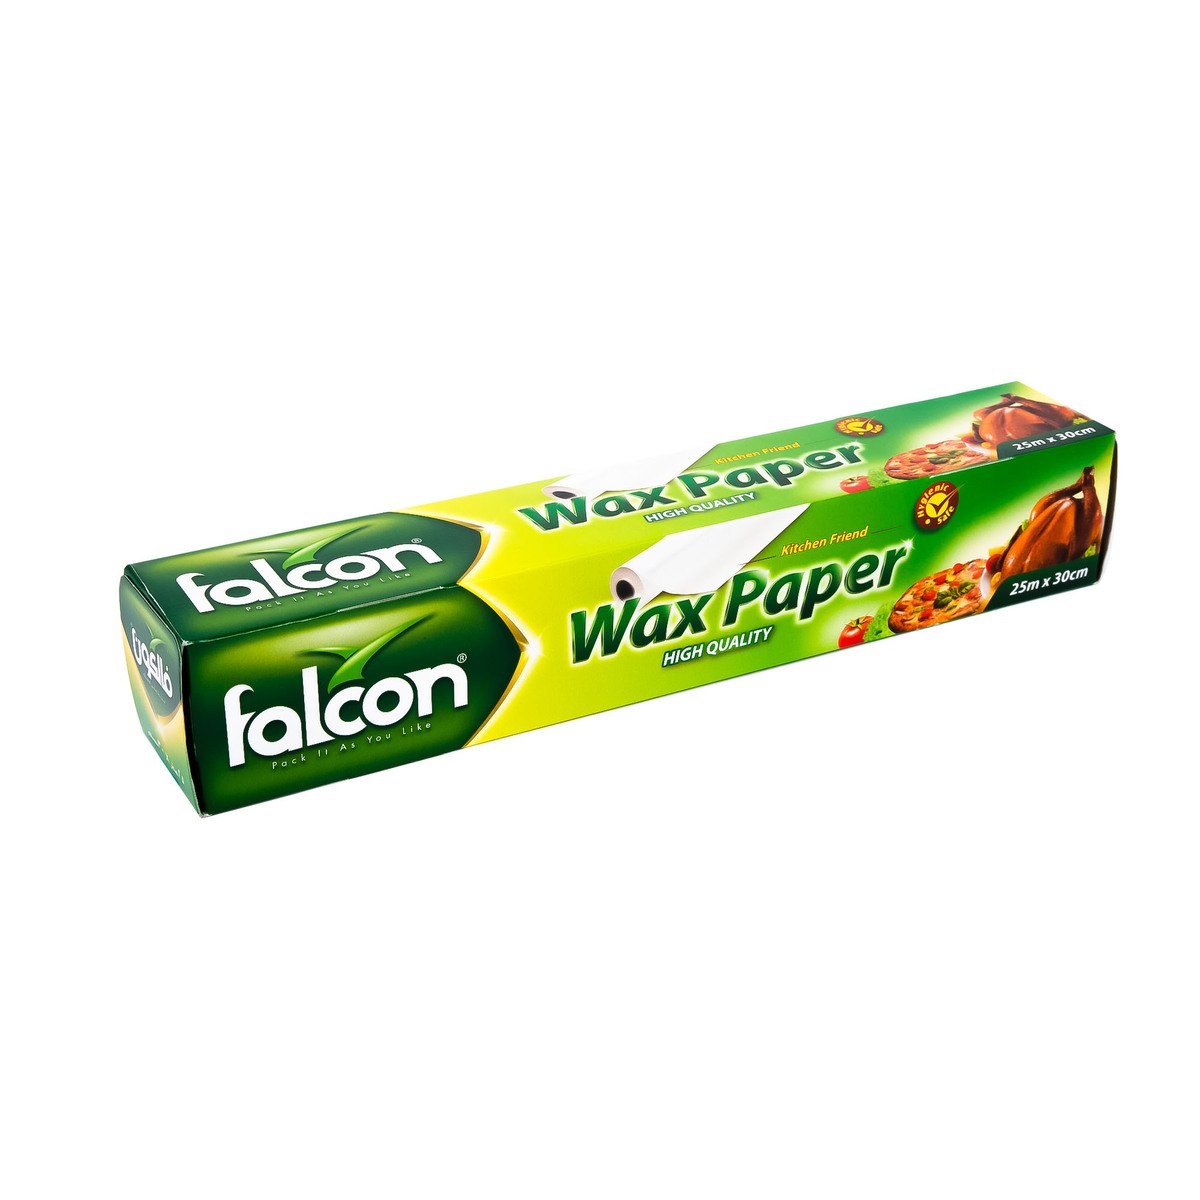 Falcon Wax Paper Size 25m x 30cm 1pc